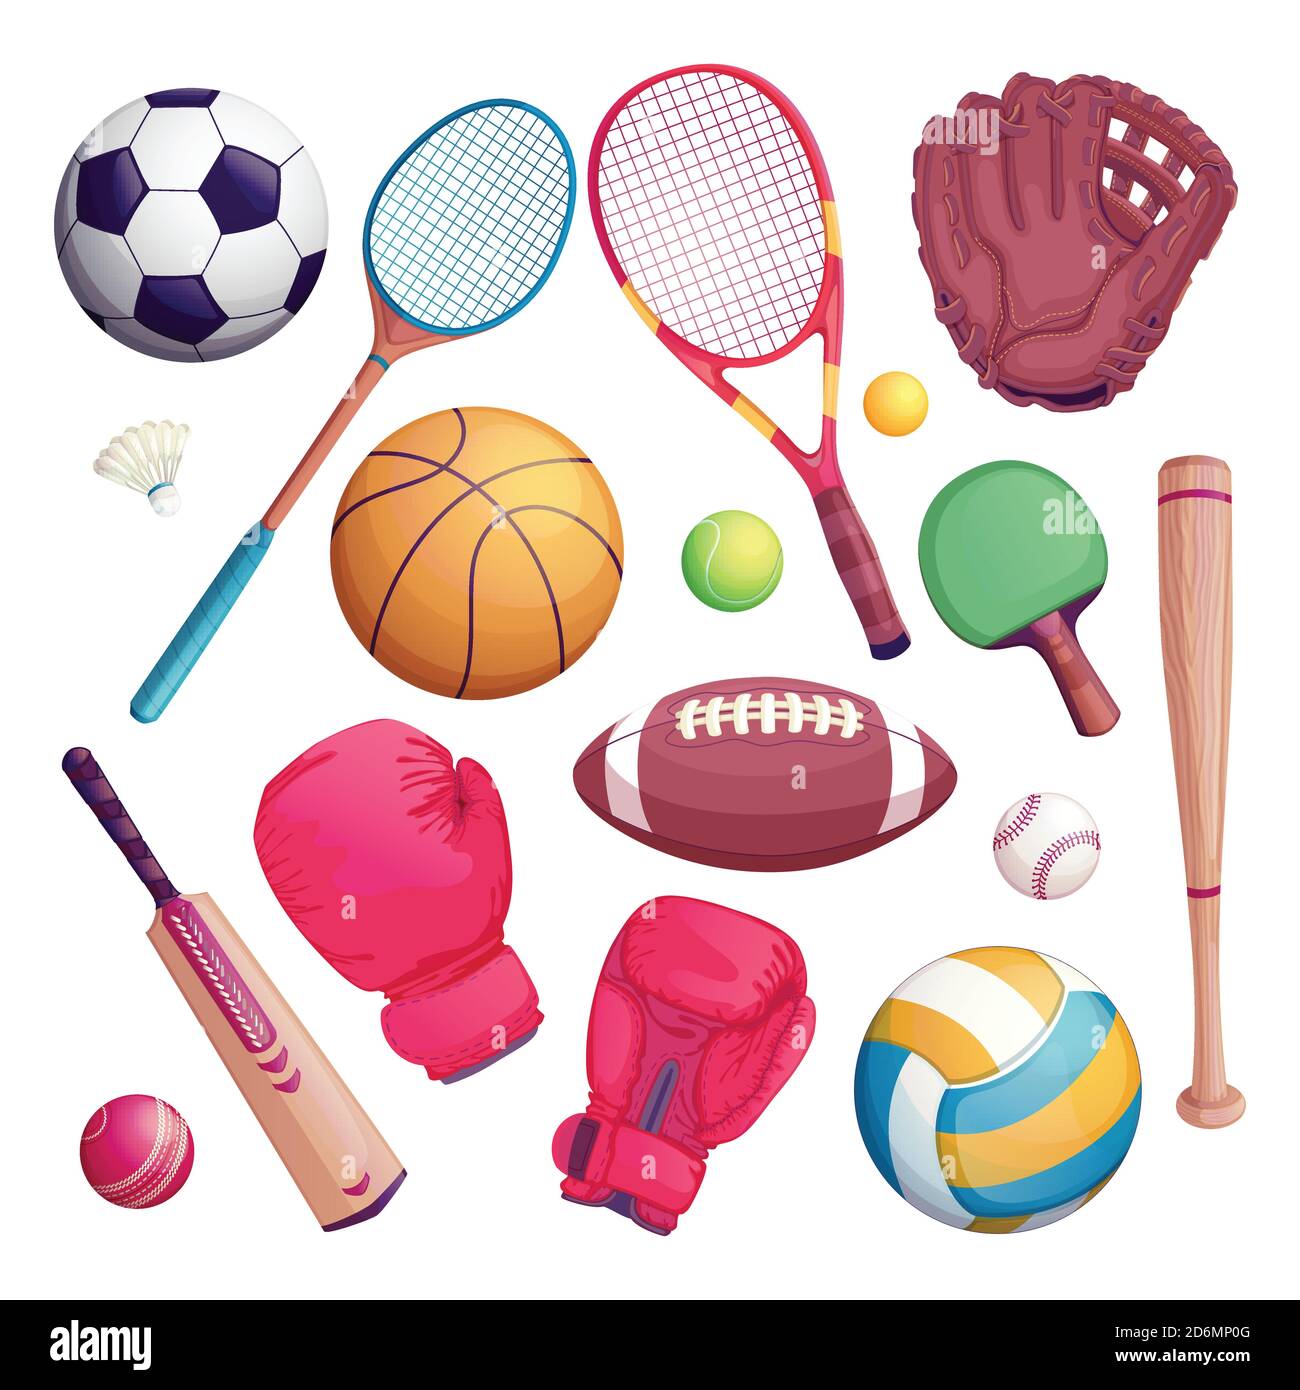 Sportgeräte isolieren Objekte. Vektor-Cartoon-Illustration von Fußball, Fußball, Tennis, Cricket, Baseball-Spiel Symbole. Stock Vektor